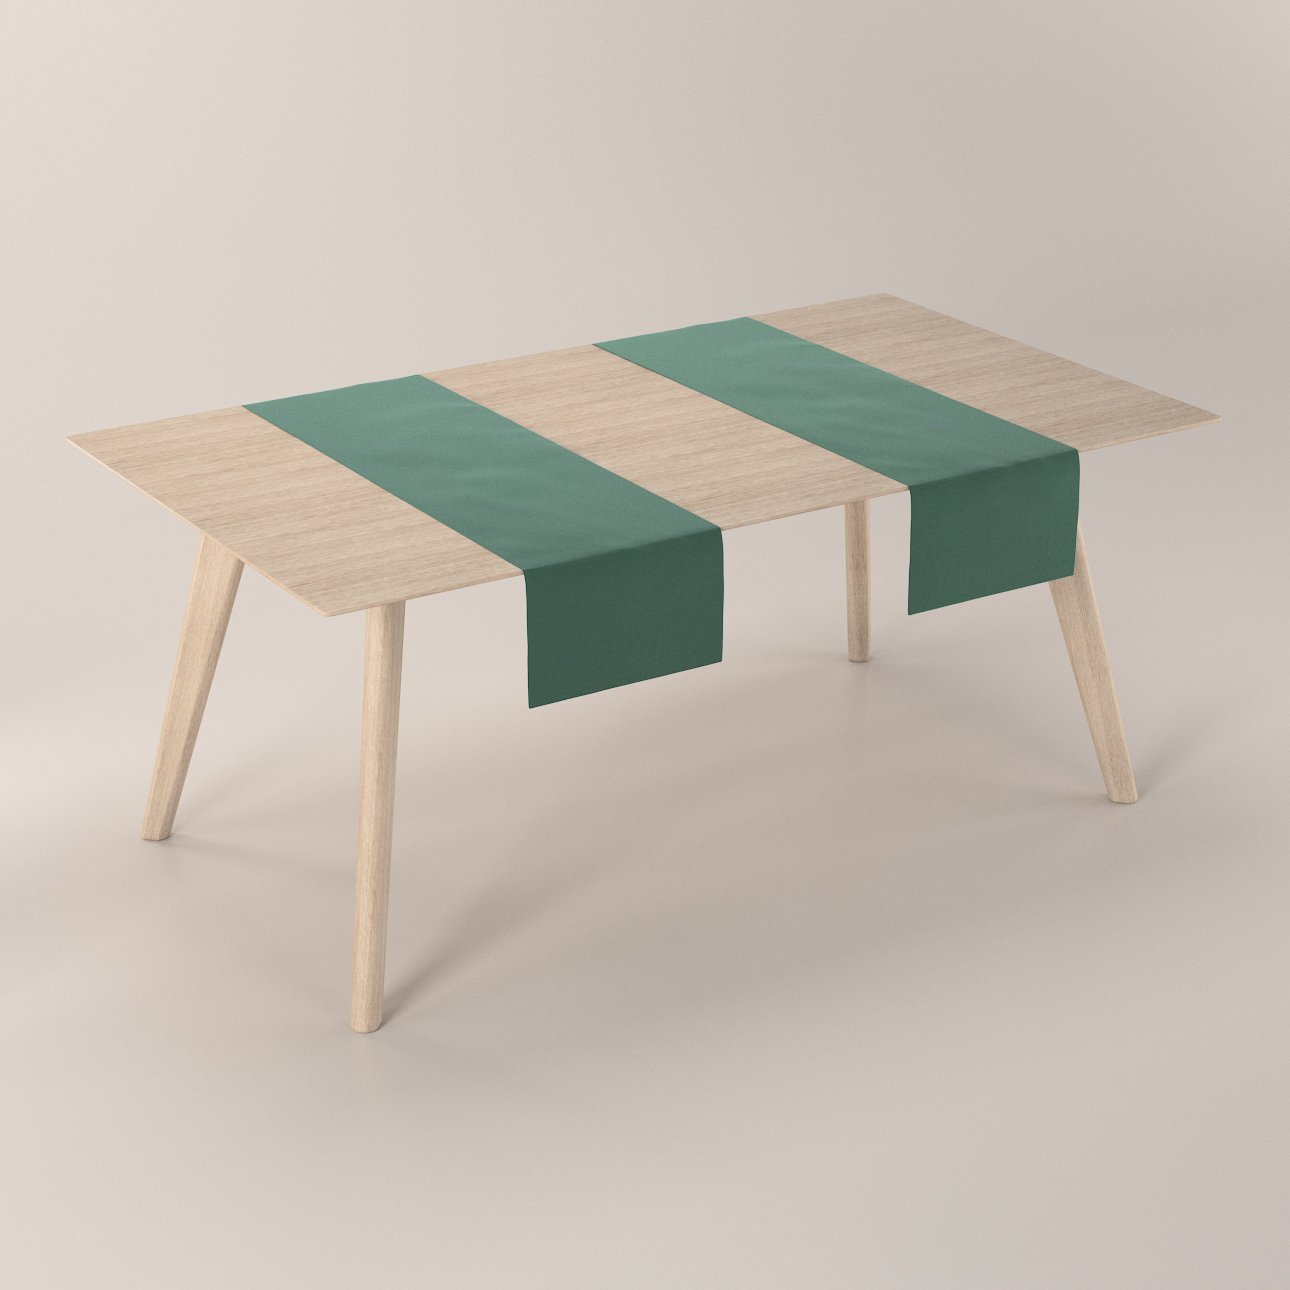 Tischläufer, dunkelgrün, 704-25, 40 x 130 cm | Tischläufer